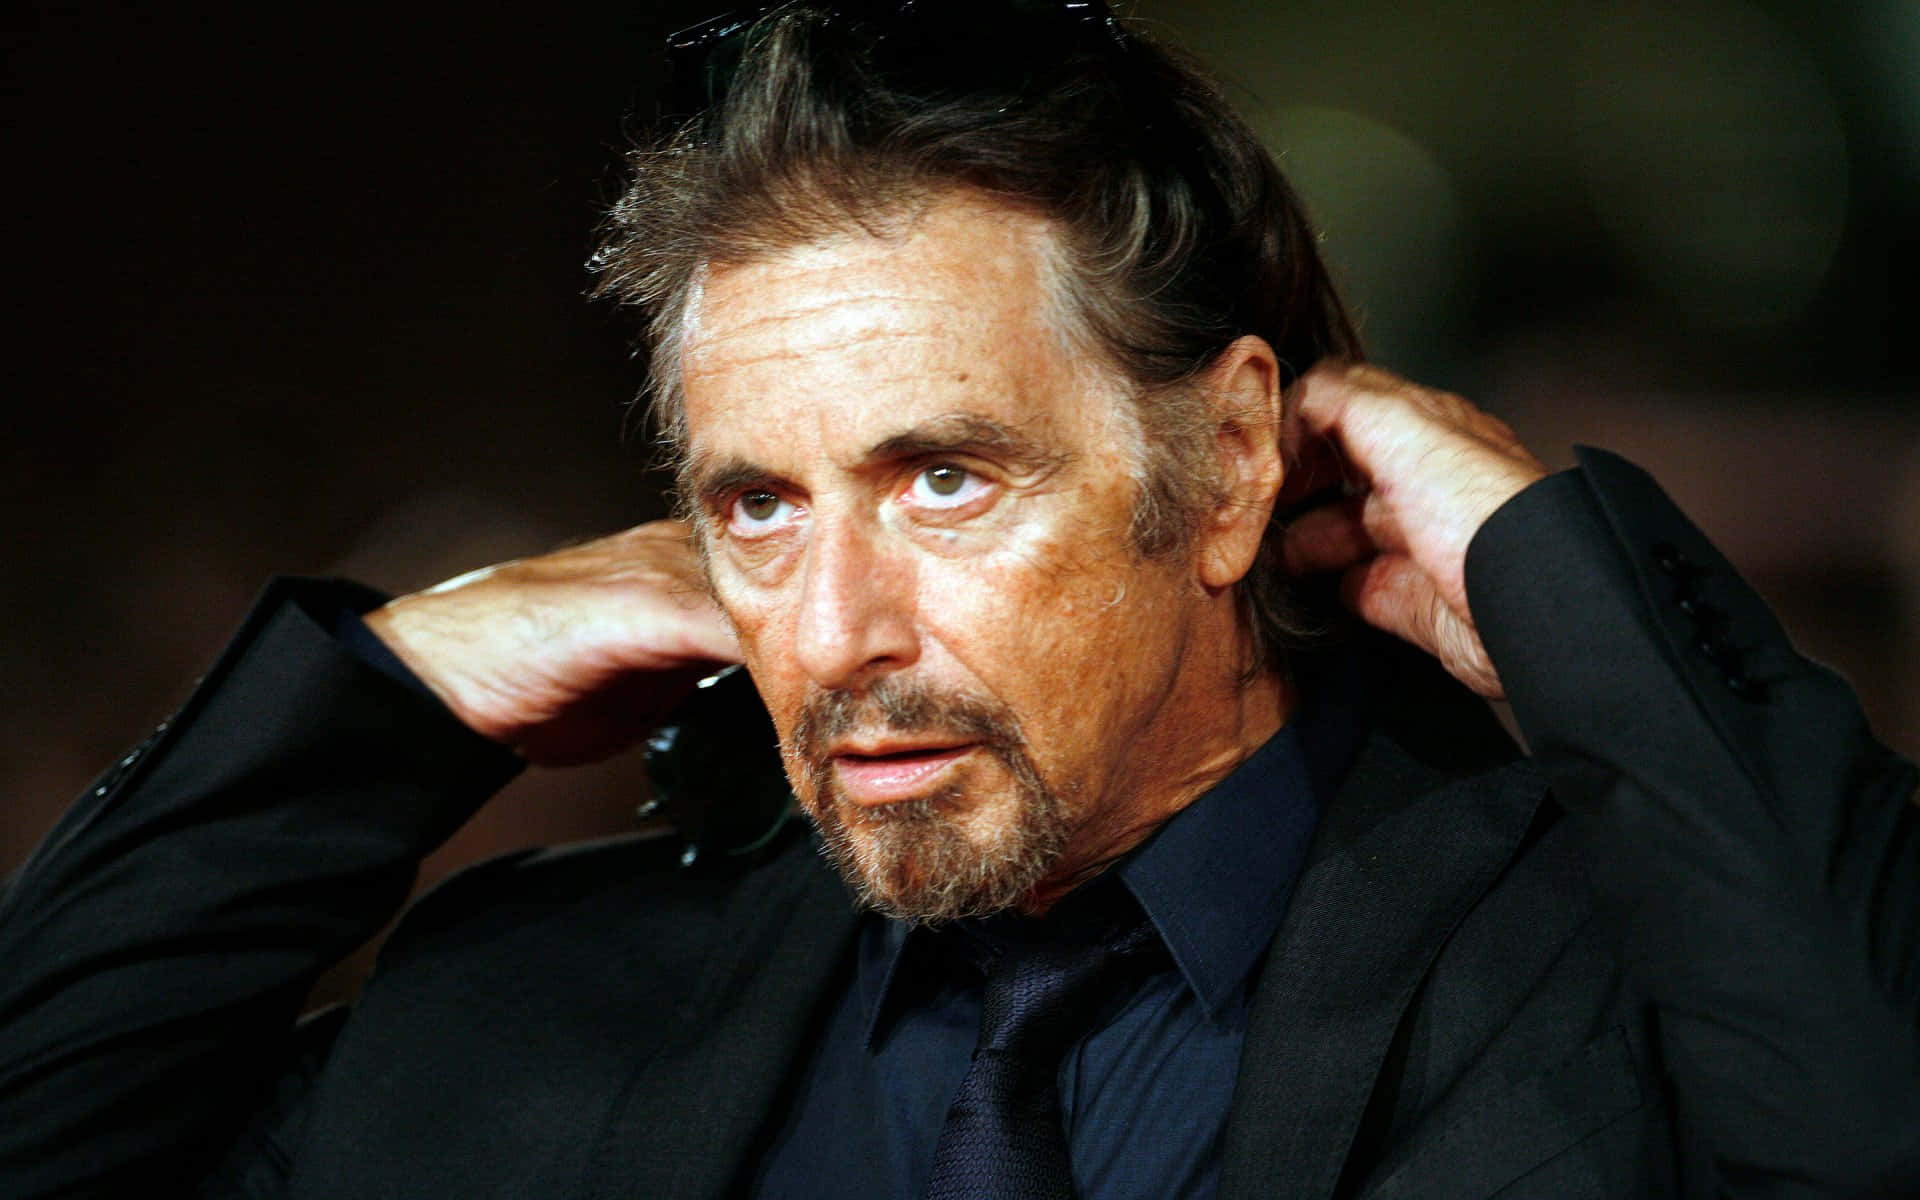 Immagineiconico Attore Al Pacino